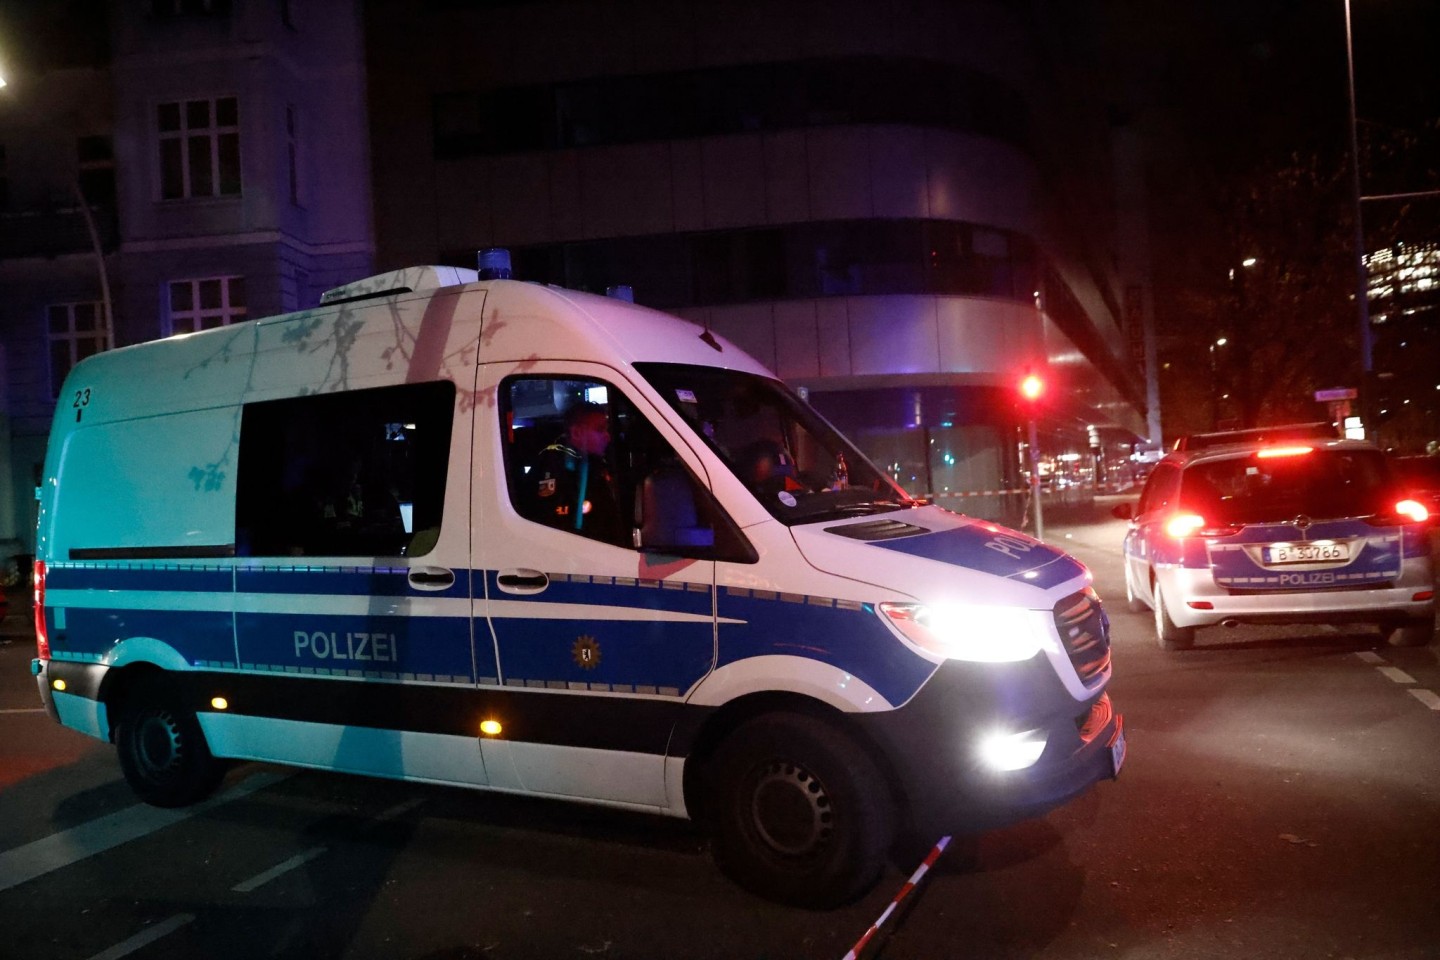 Einsatzfahrzeuge der Polizei am Tatort in Berlin, wo ein Geschäft überfallen wurde.